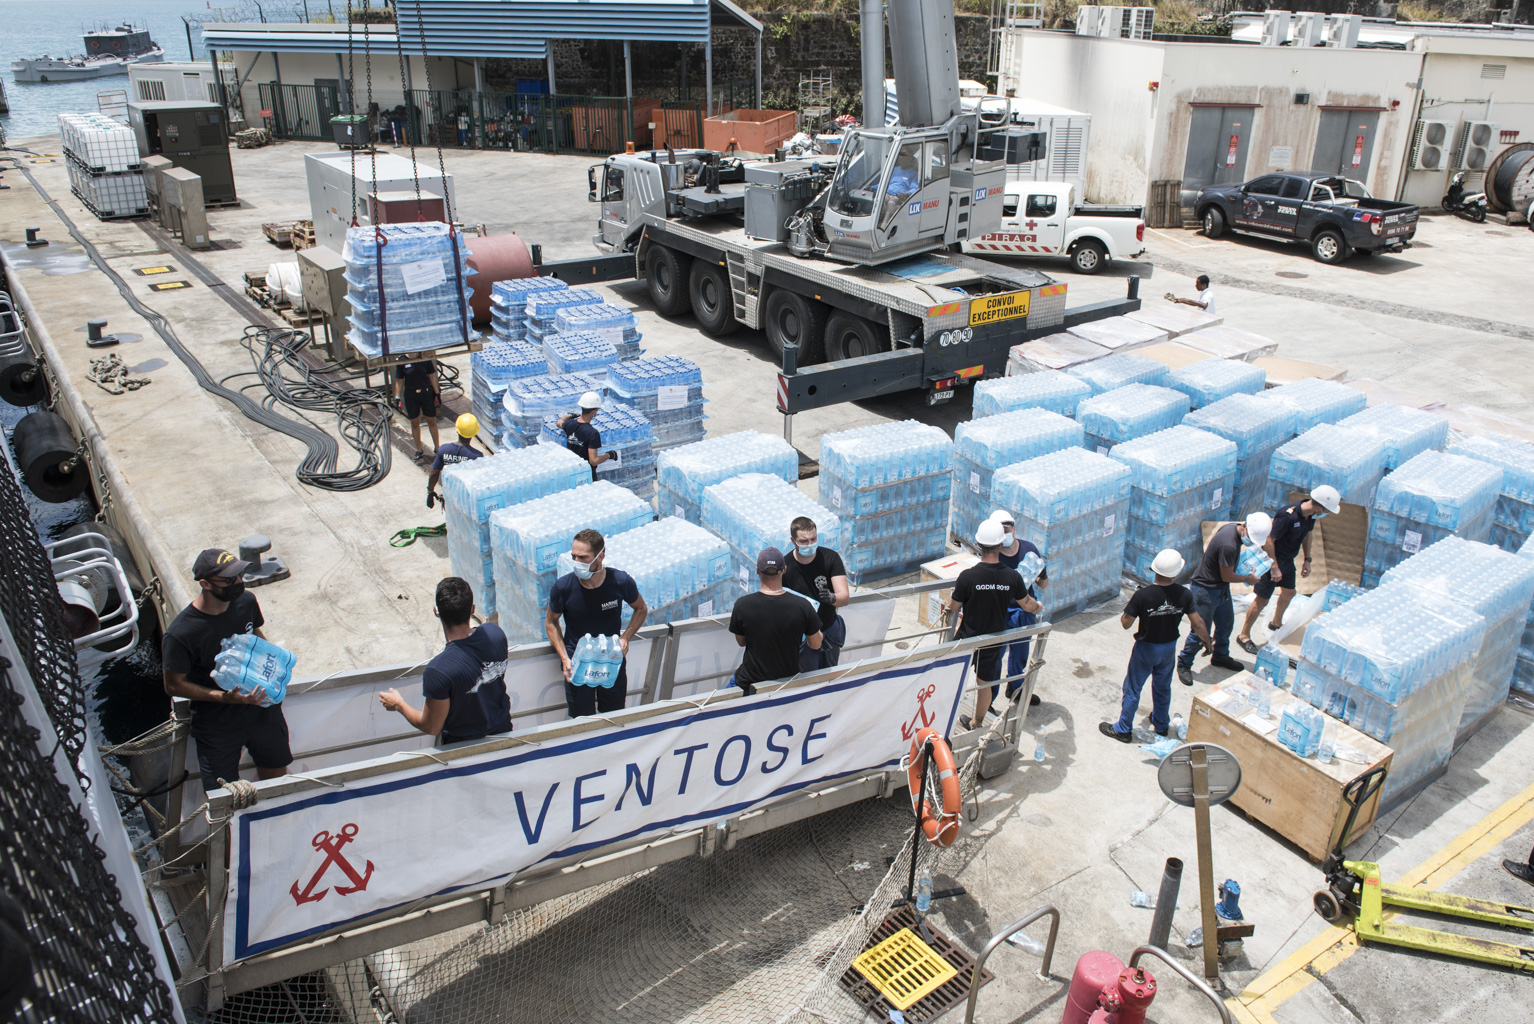 Embarquement de 100 tonnes d'eau sur la Frégate de l'armée pour venir en aide aux habitants de Saint-Vincent touchés par l’éruption de son volcan La Soufrière